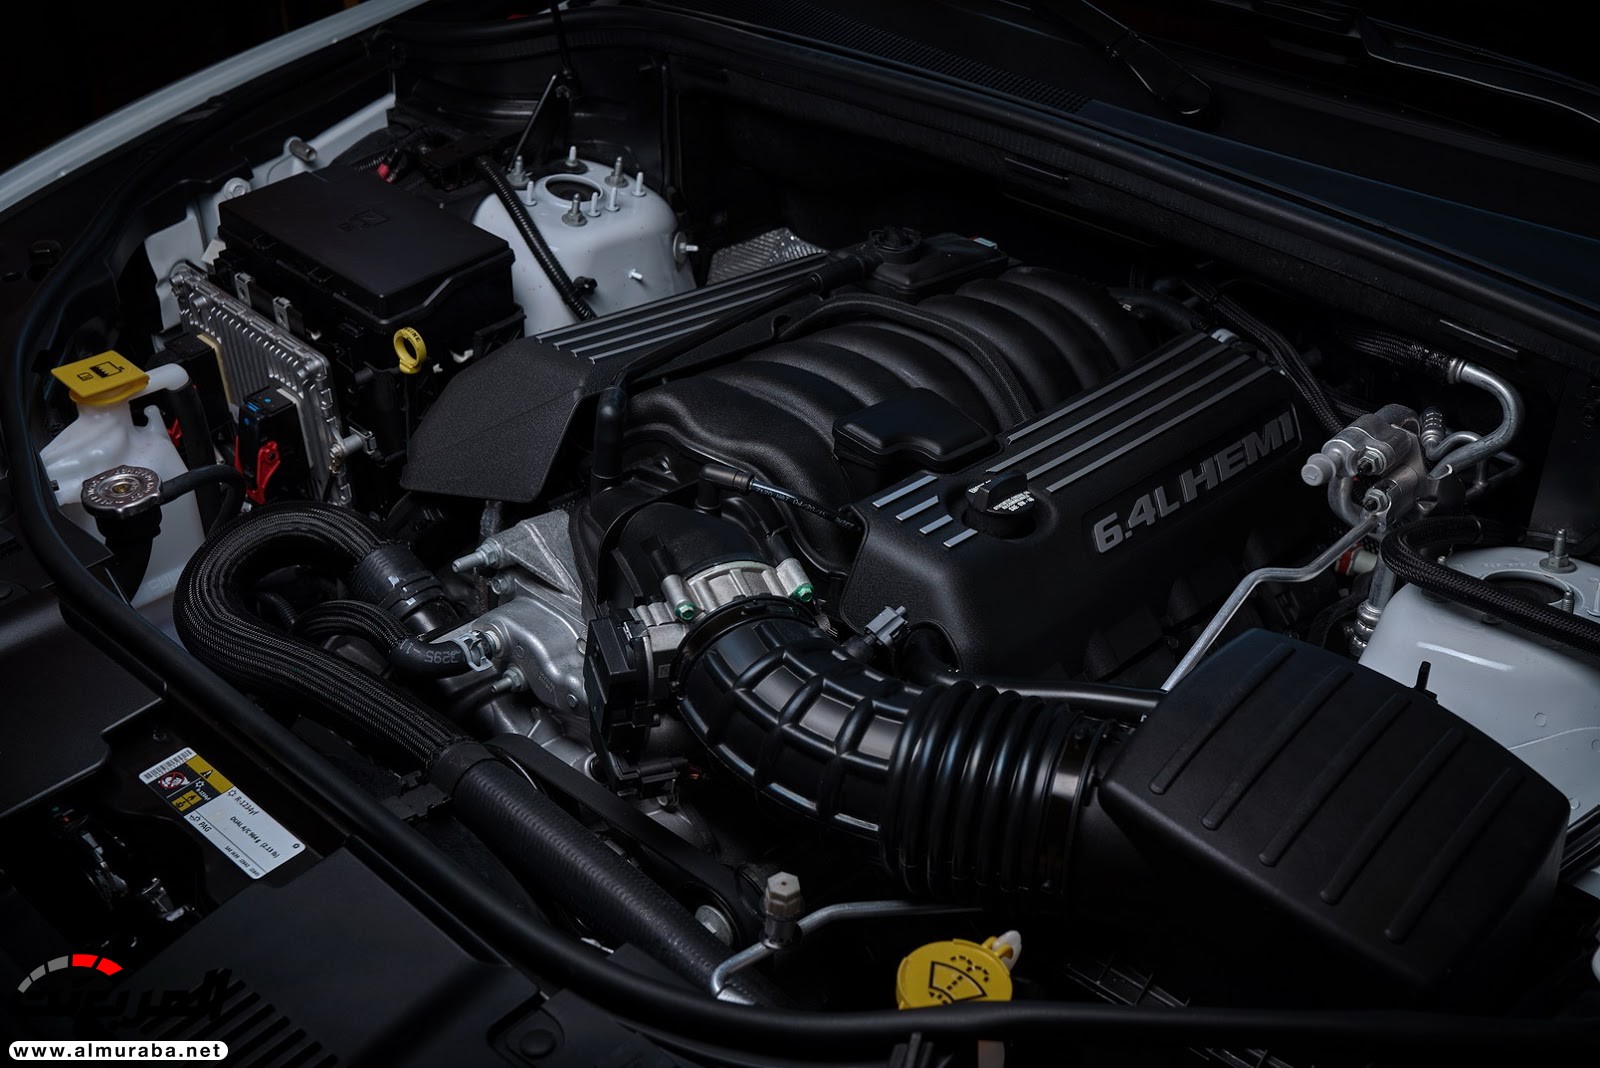 "دودج" دورانجو إس آر تي الجديدة كليا 2018 يكشف عنها بمحرك 475 حصان Dodge Durango SRT 46